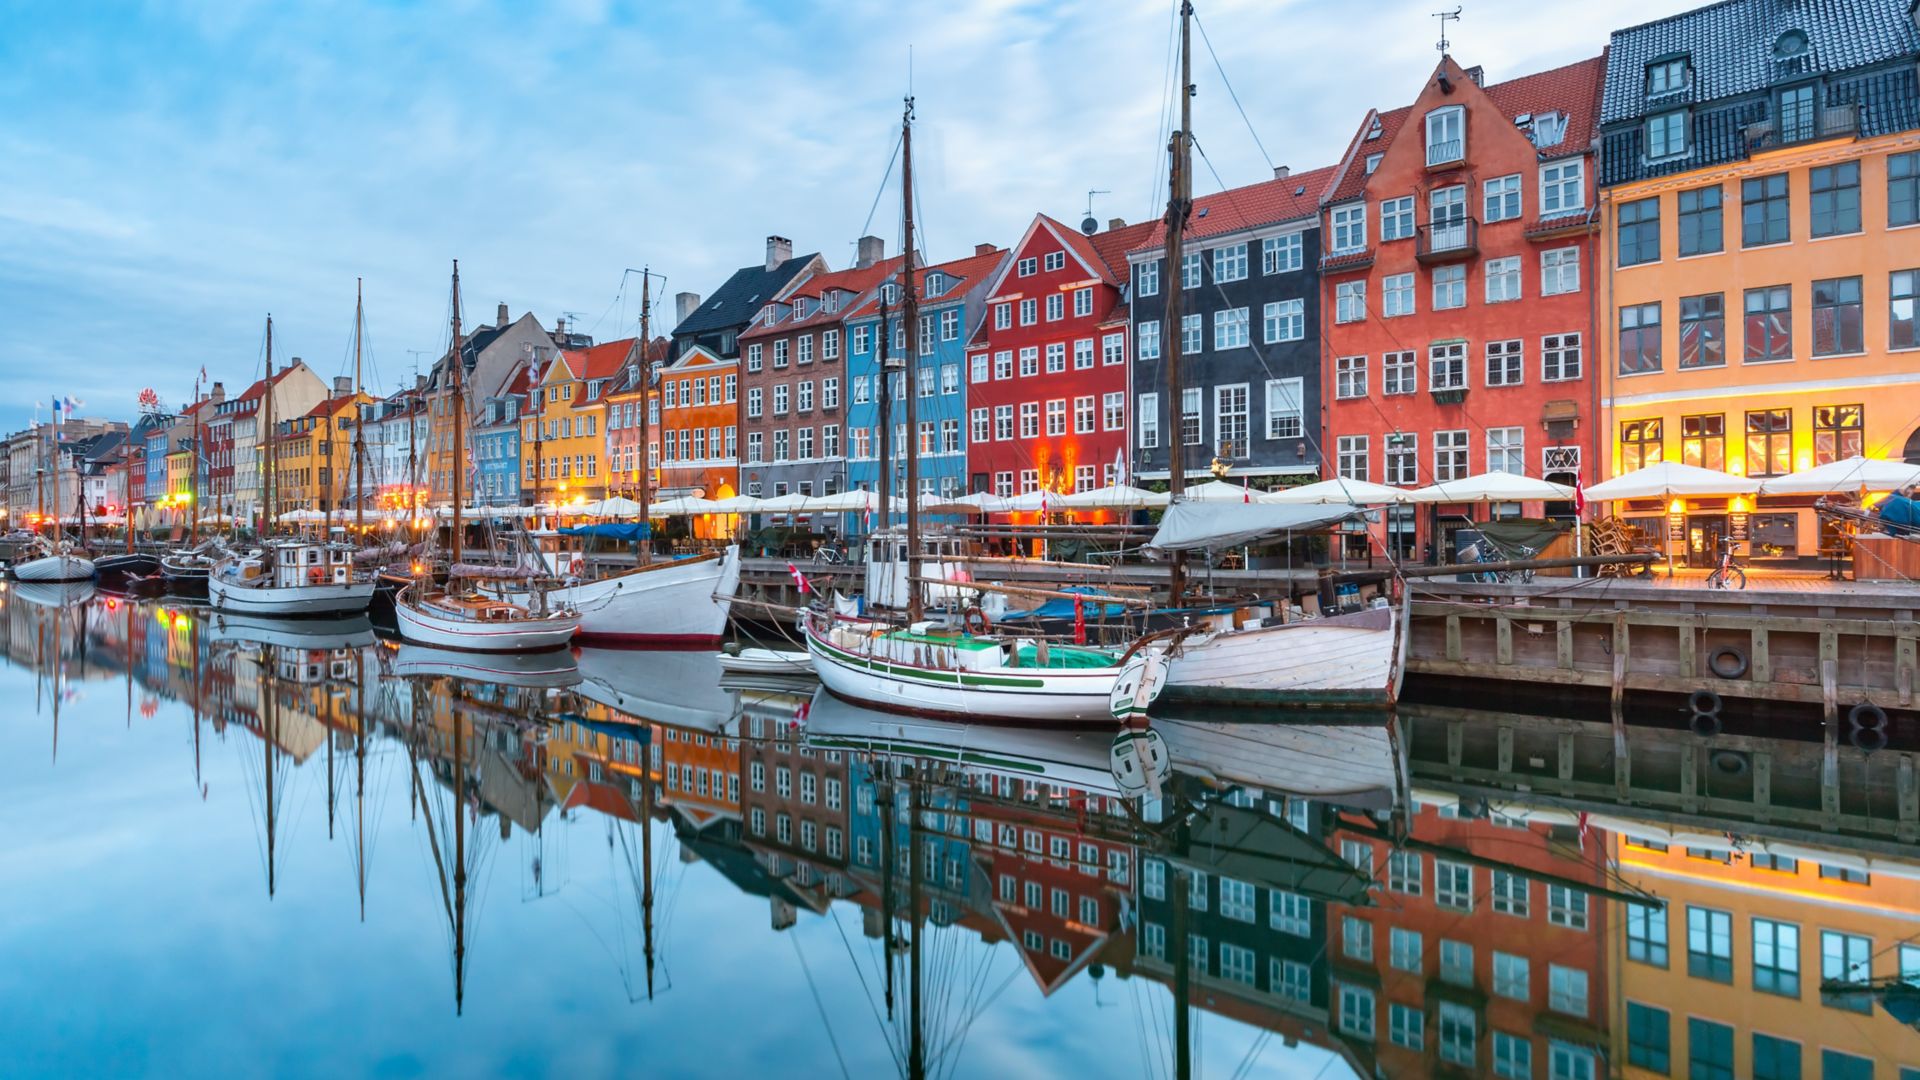 Nyhavn avec des façades colorées de vieilles maisons et de vieux navires dans la vieille ville de Copenhague, capitale du Danemark.